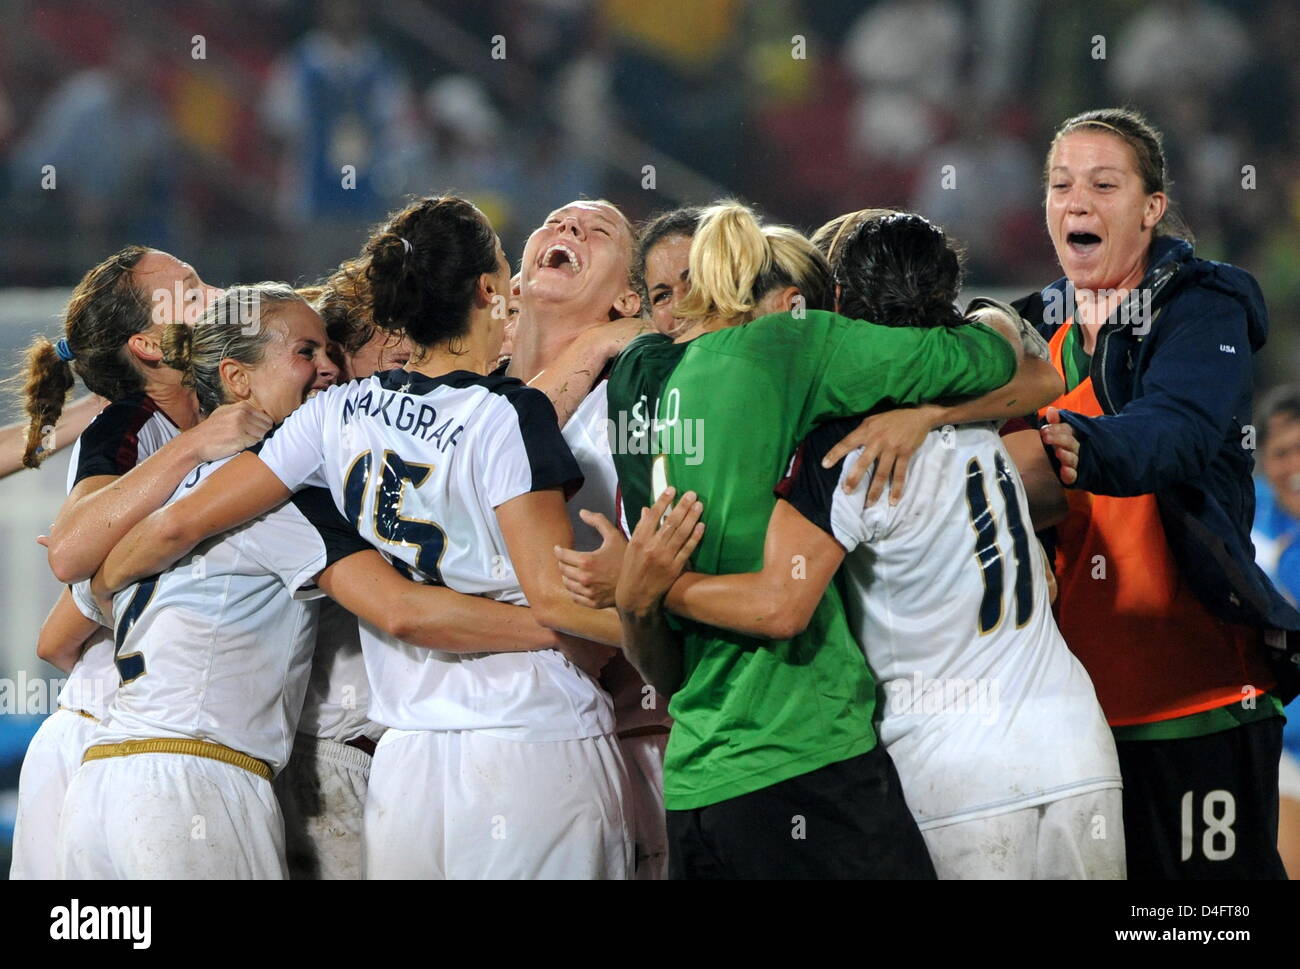 L'équipe d'entre nous célèbrent leur victoire après la médaille d'or féminine de football match entre le Brésil et USA au stade des travailleurs à Pékin pendant les Jeux Olympiques de 2008 à Beijing, Chine, 21 août 2008. Photo : Grimm pairs # # # # # #  dpa Banque D'Images